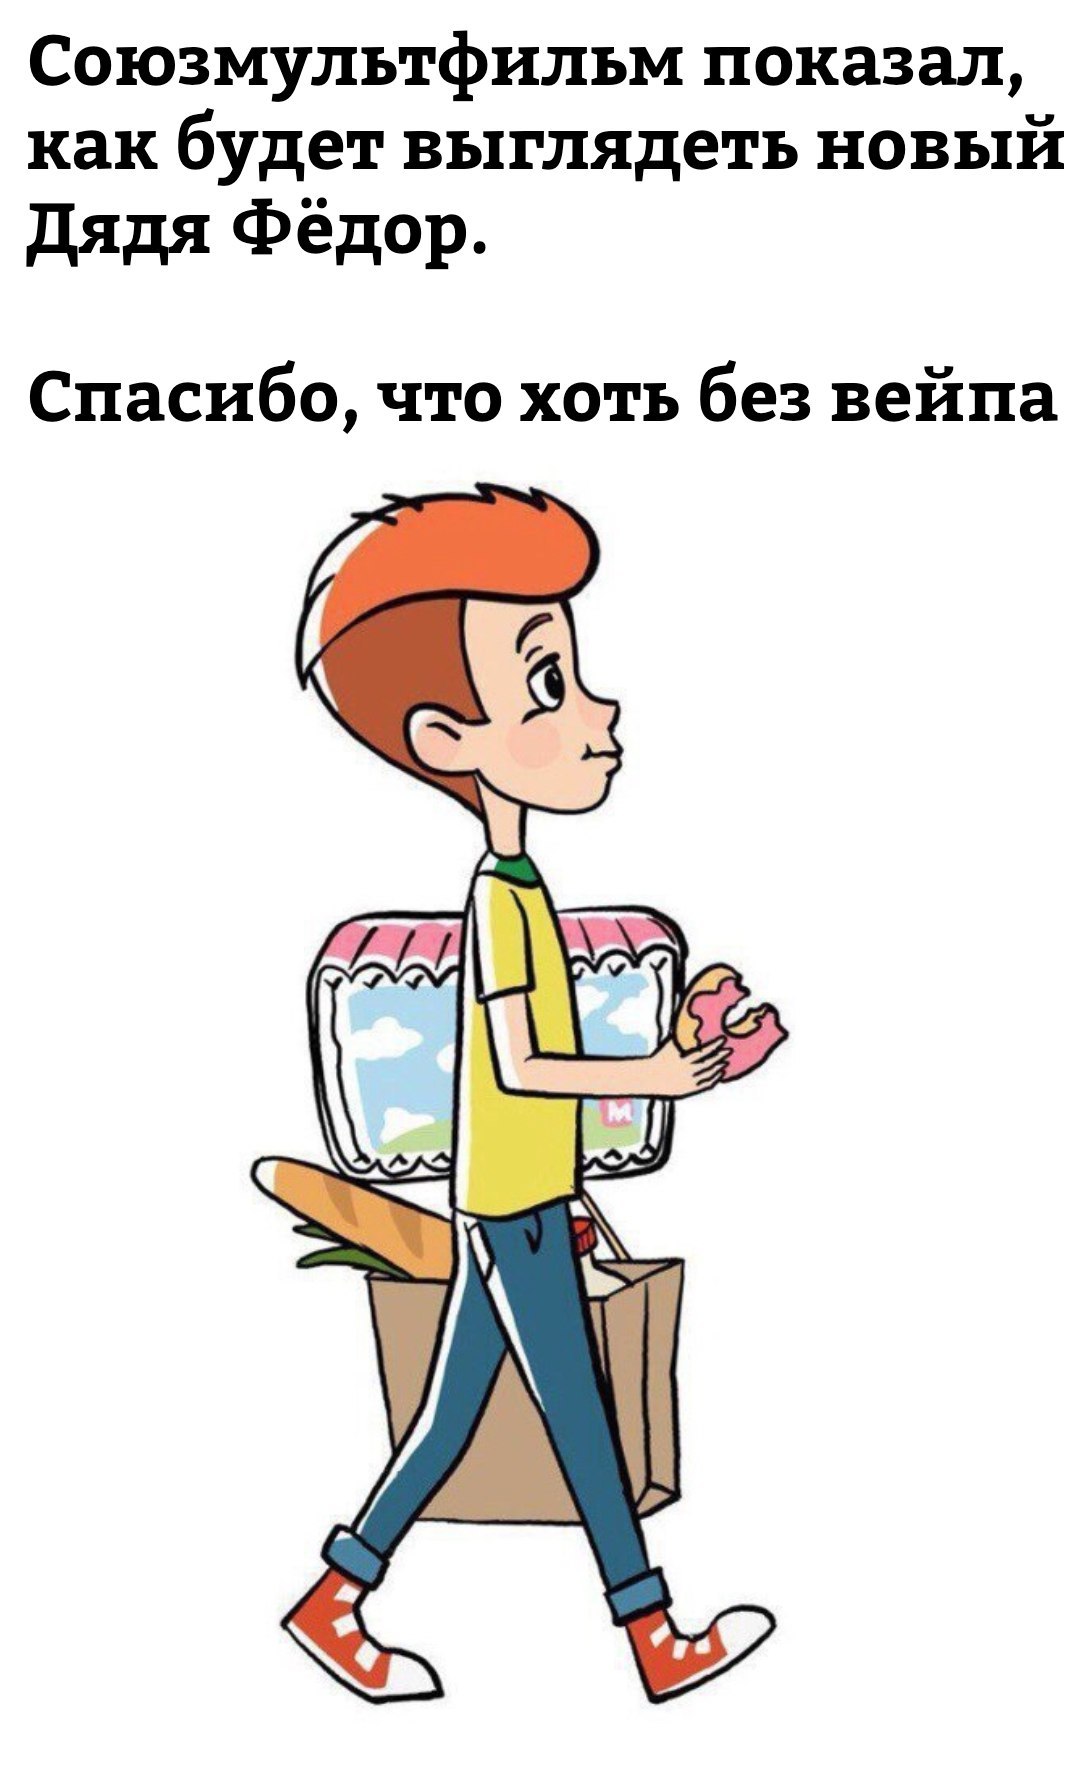 Uncle Fedor grew up - Cartoons, Uncle Fedor, Prostokvashino, Soyuzmultfilm, Uncle Fedor